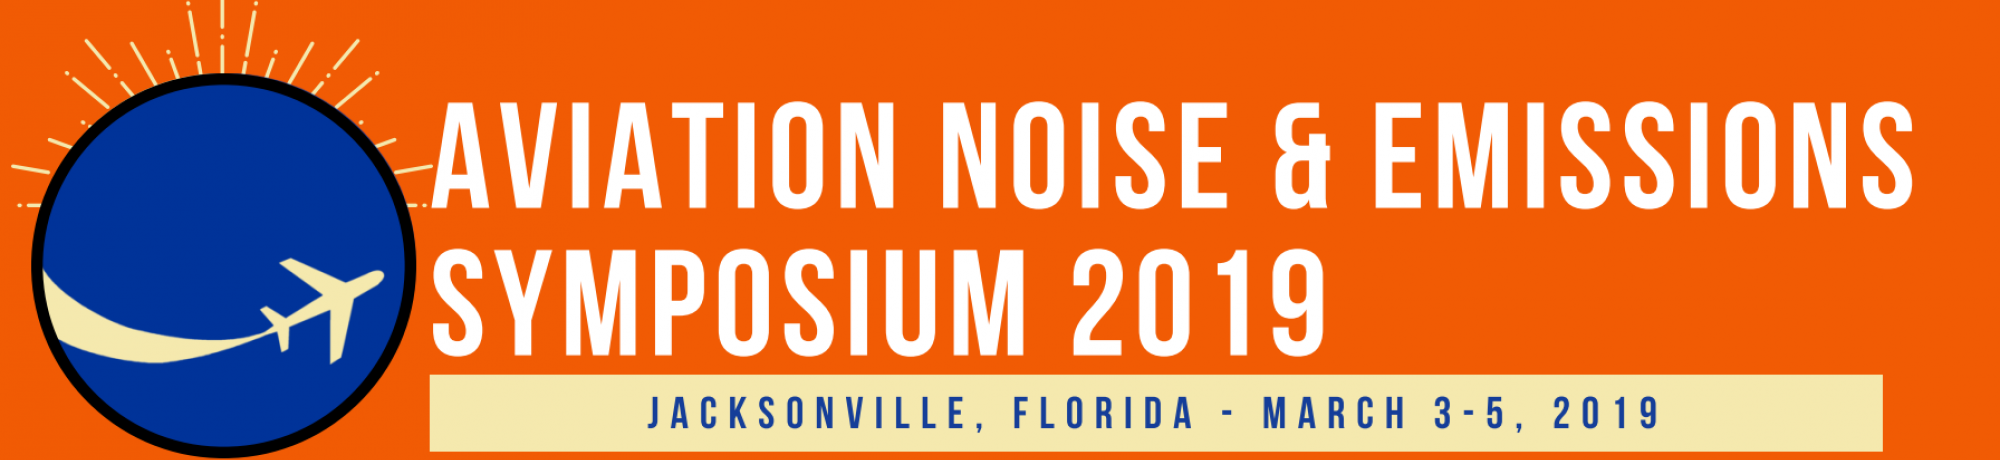 Aviation Noise & Emissions Symposium